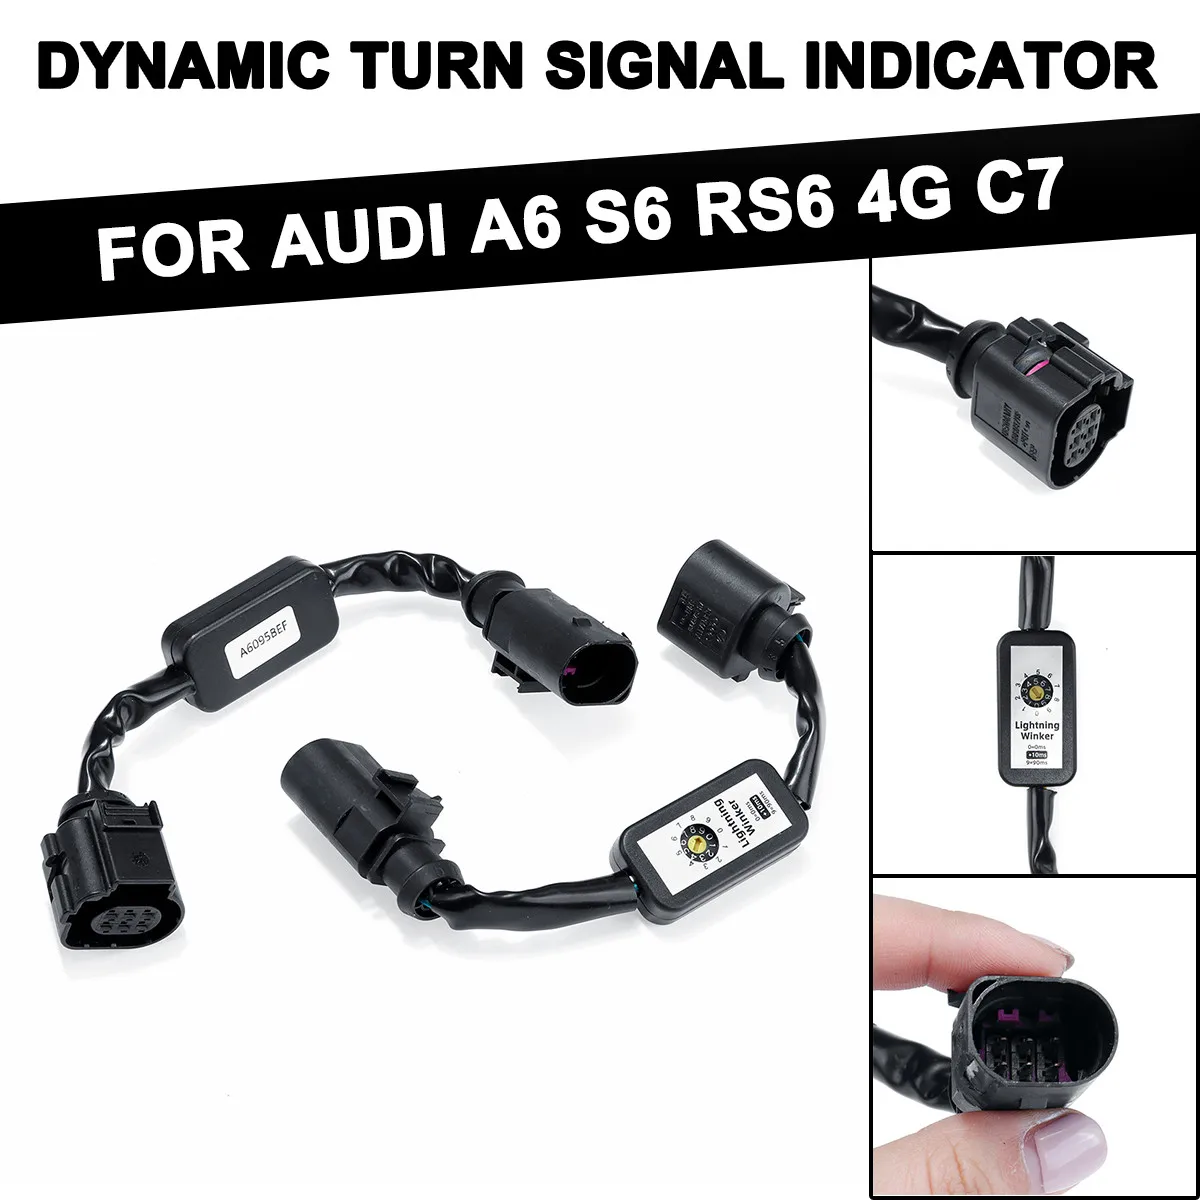 

Для AUDI A6 S6 RS6 4G C7, 2 шт., задний фонарь, дополнительный модуль, кабель, Динамический указатель поворота, жгут проводов, автомобильные аксессуары